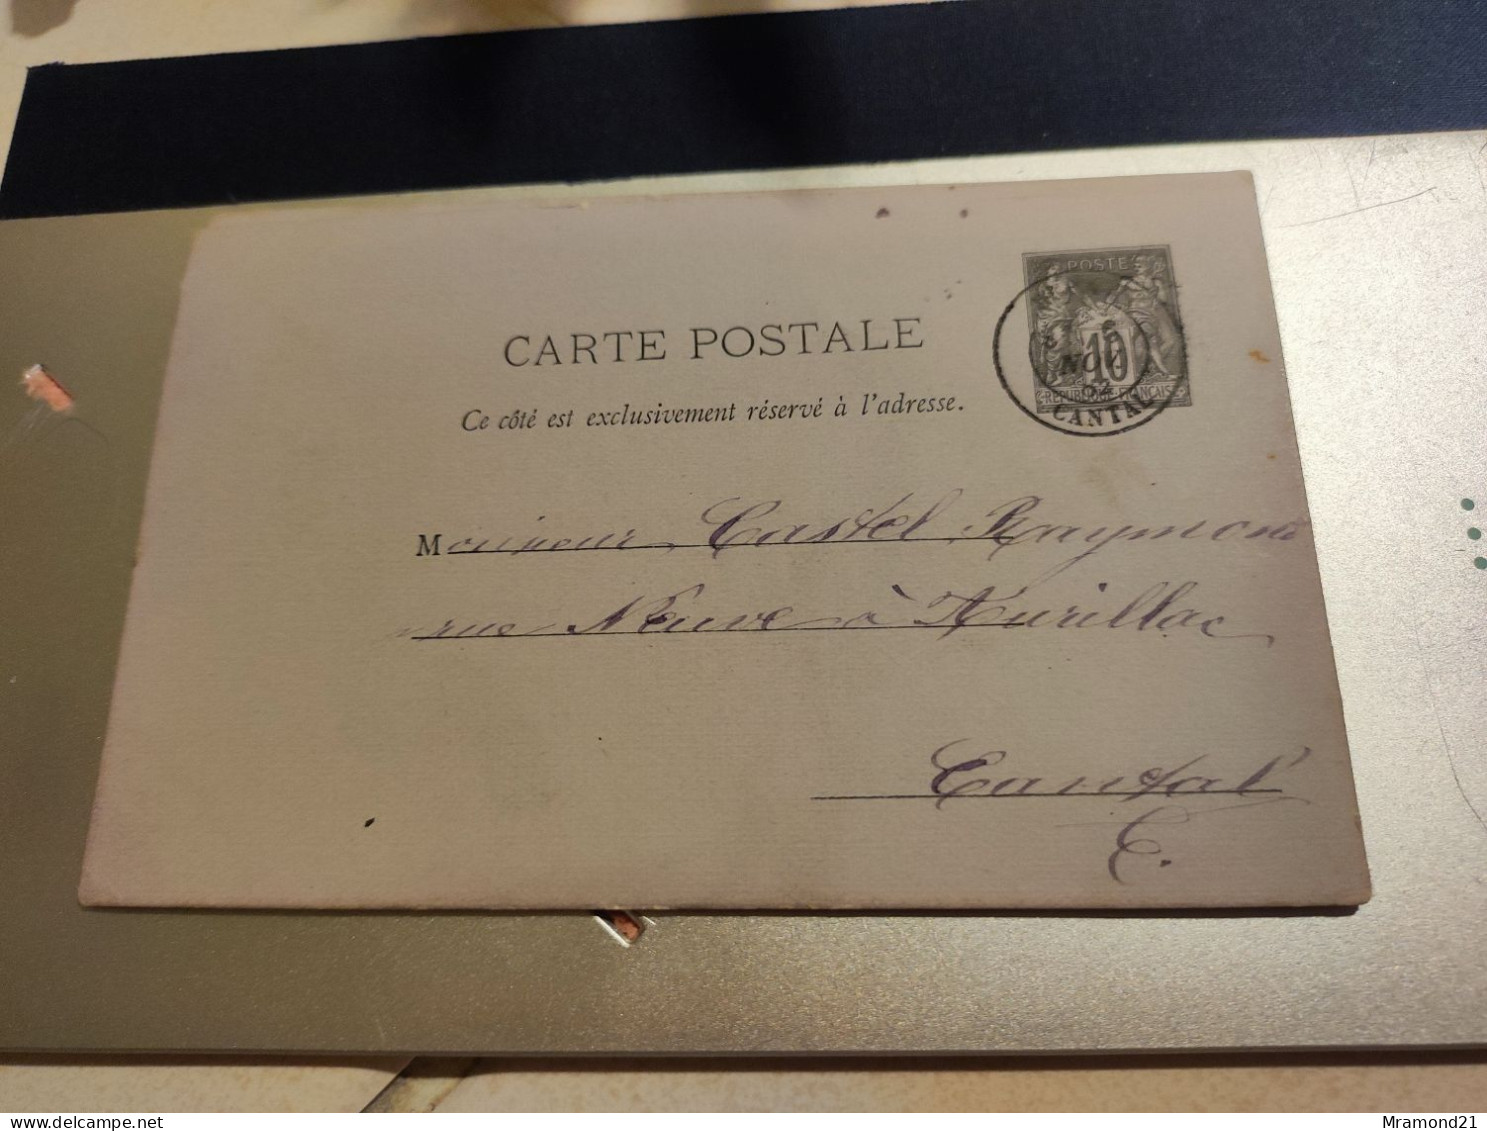 Cartes postales anciennes du Cantal